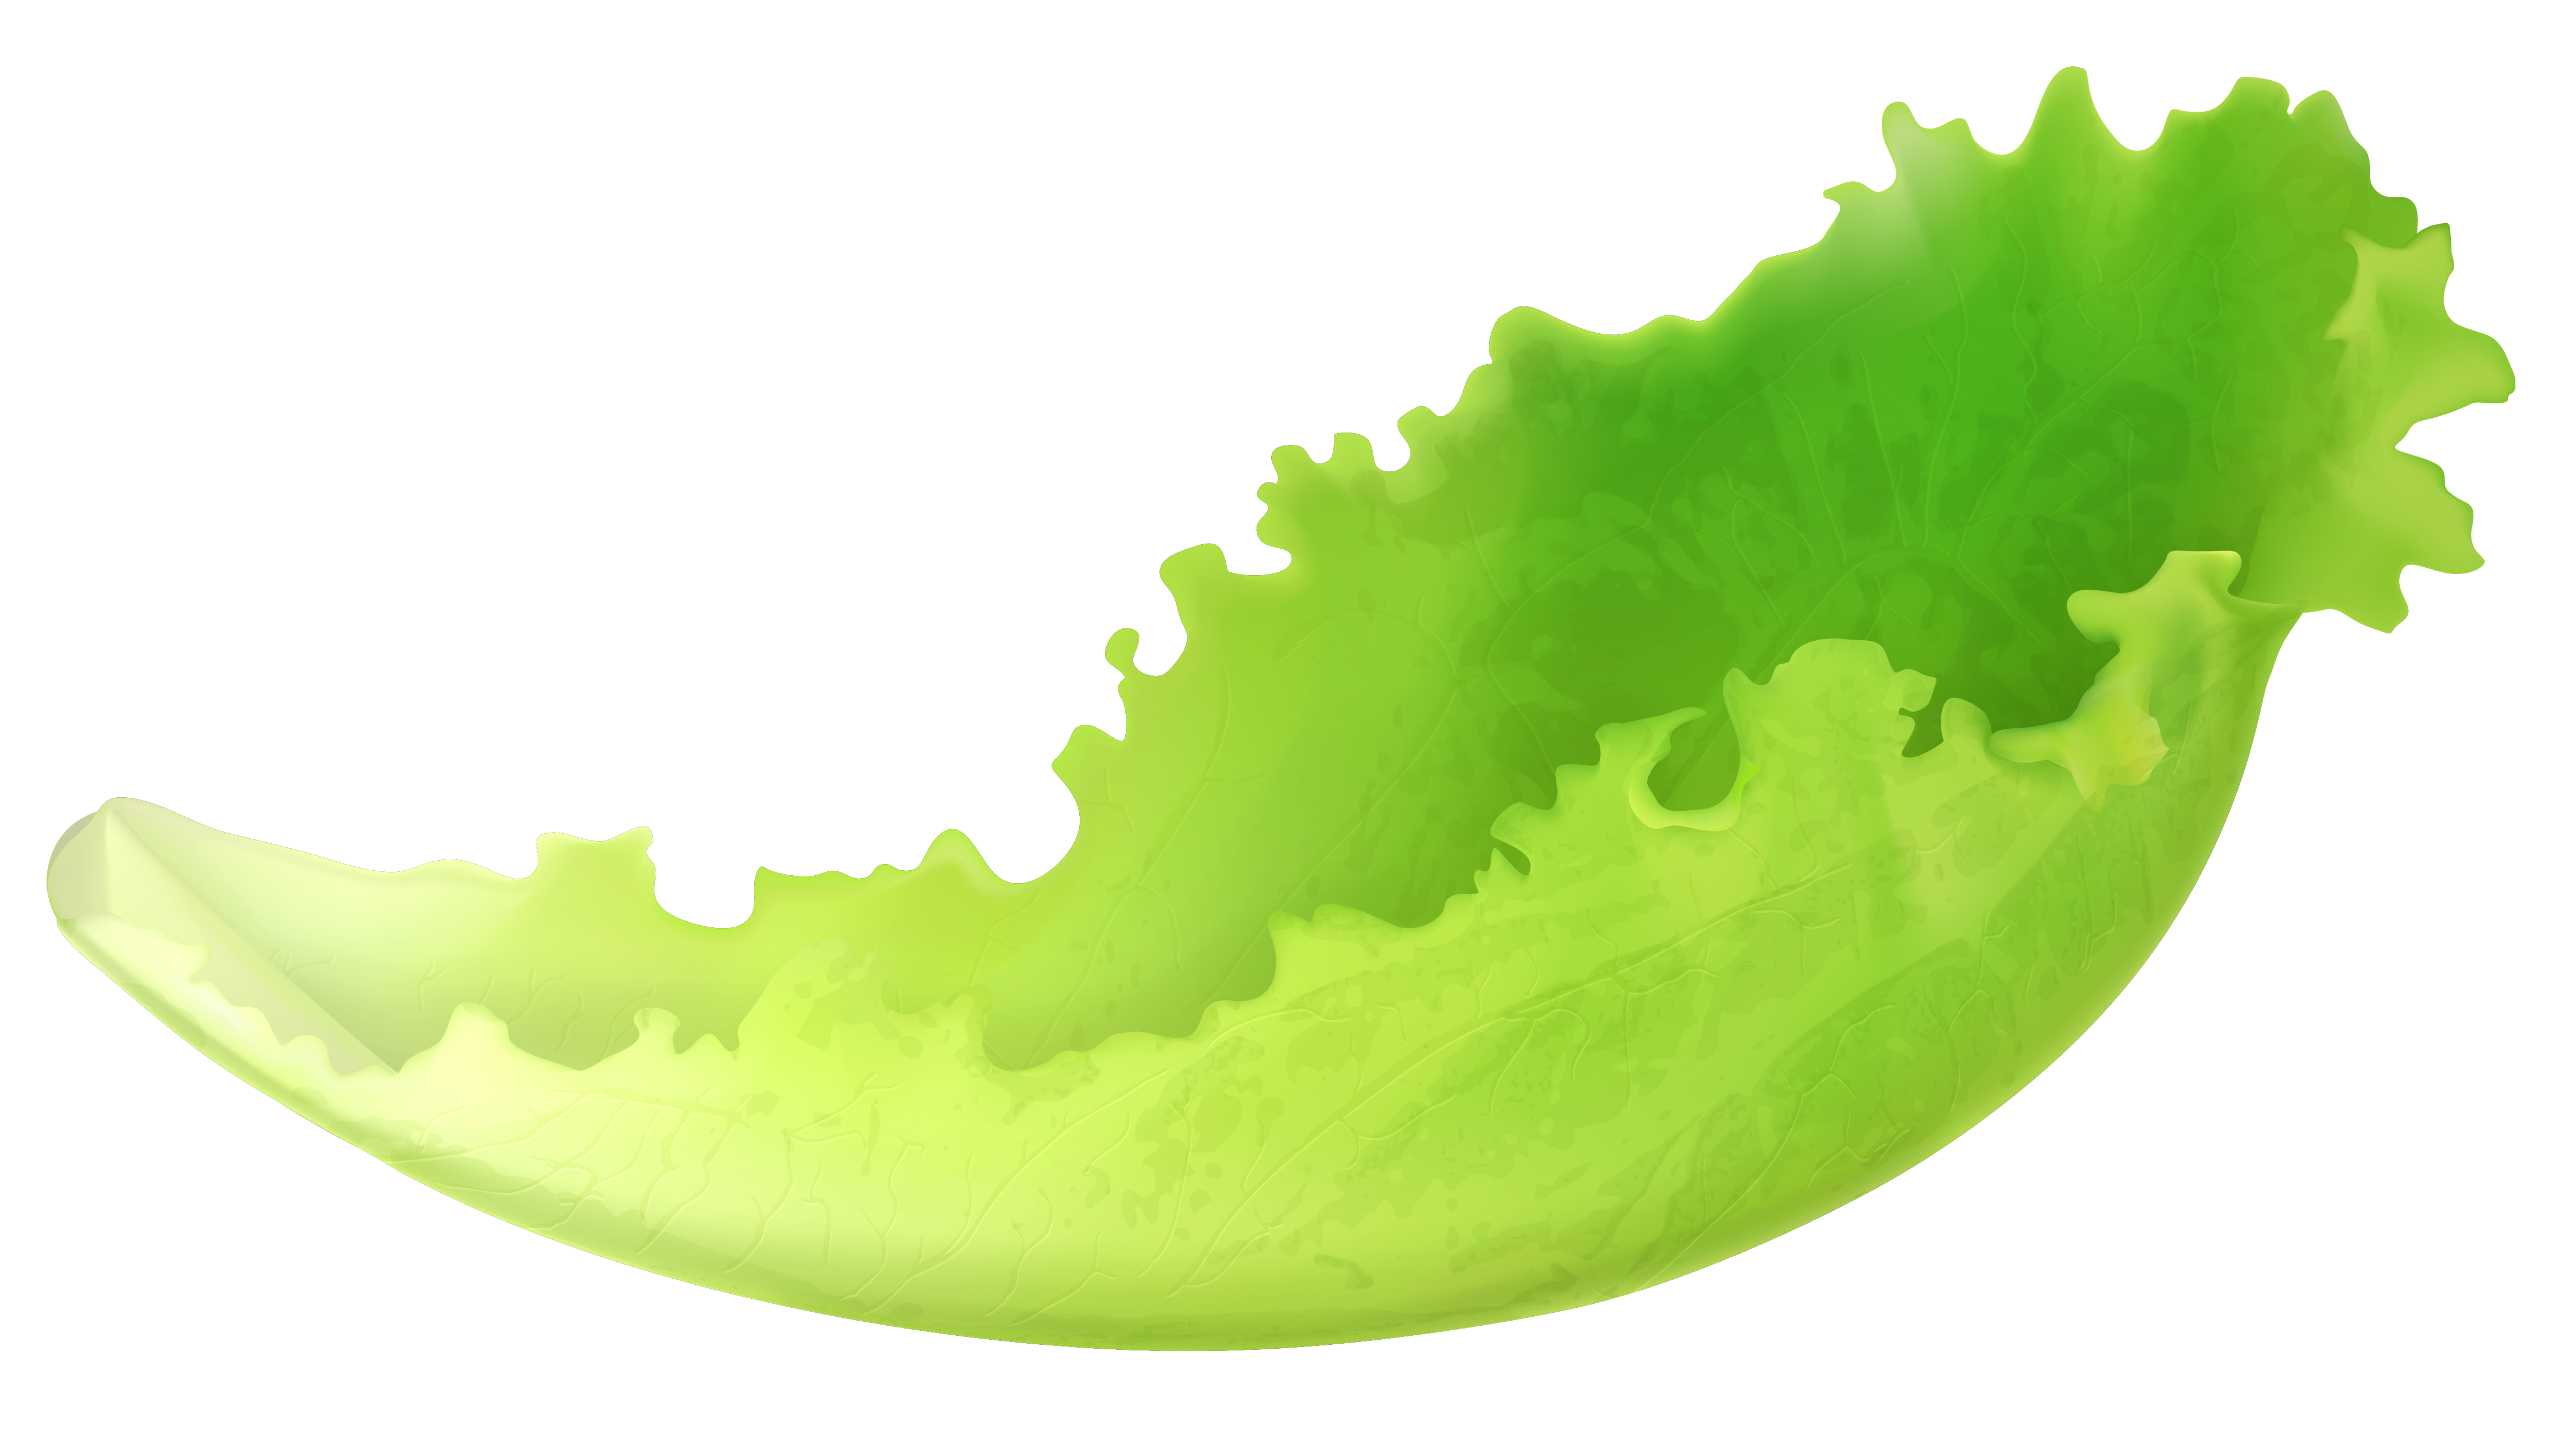 Leaf Lettuce PNG Clipart